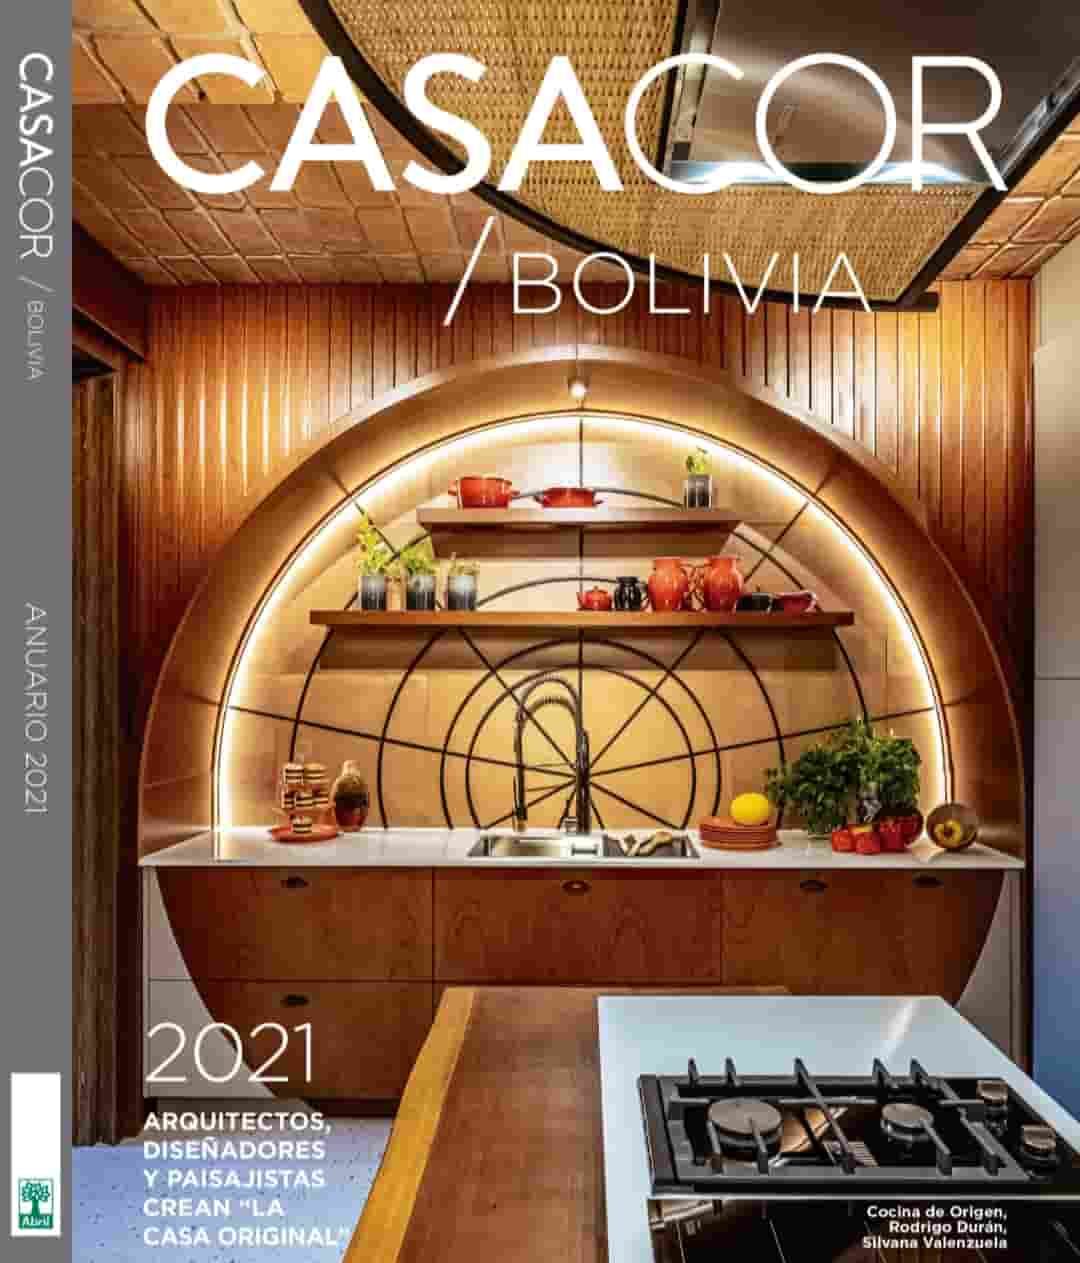 Casacor Bolivia 2022